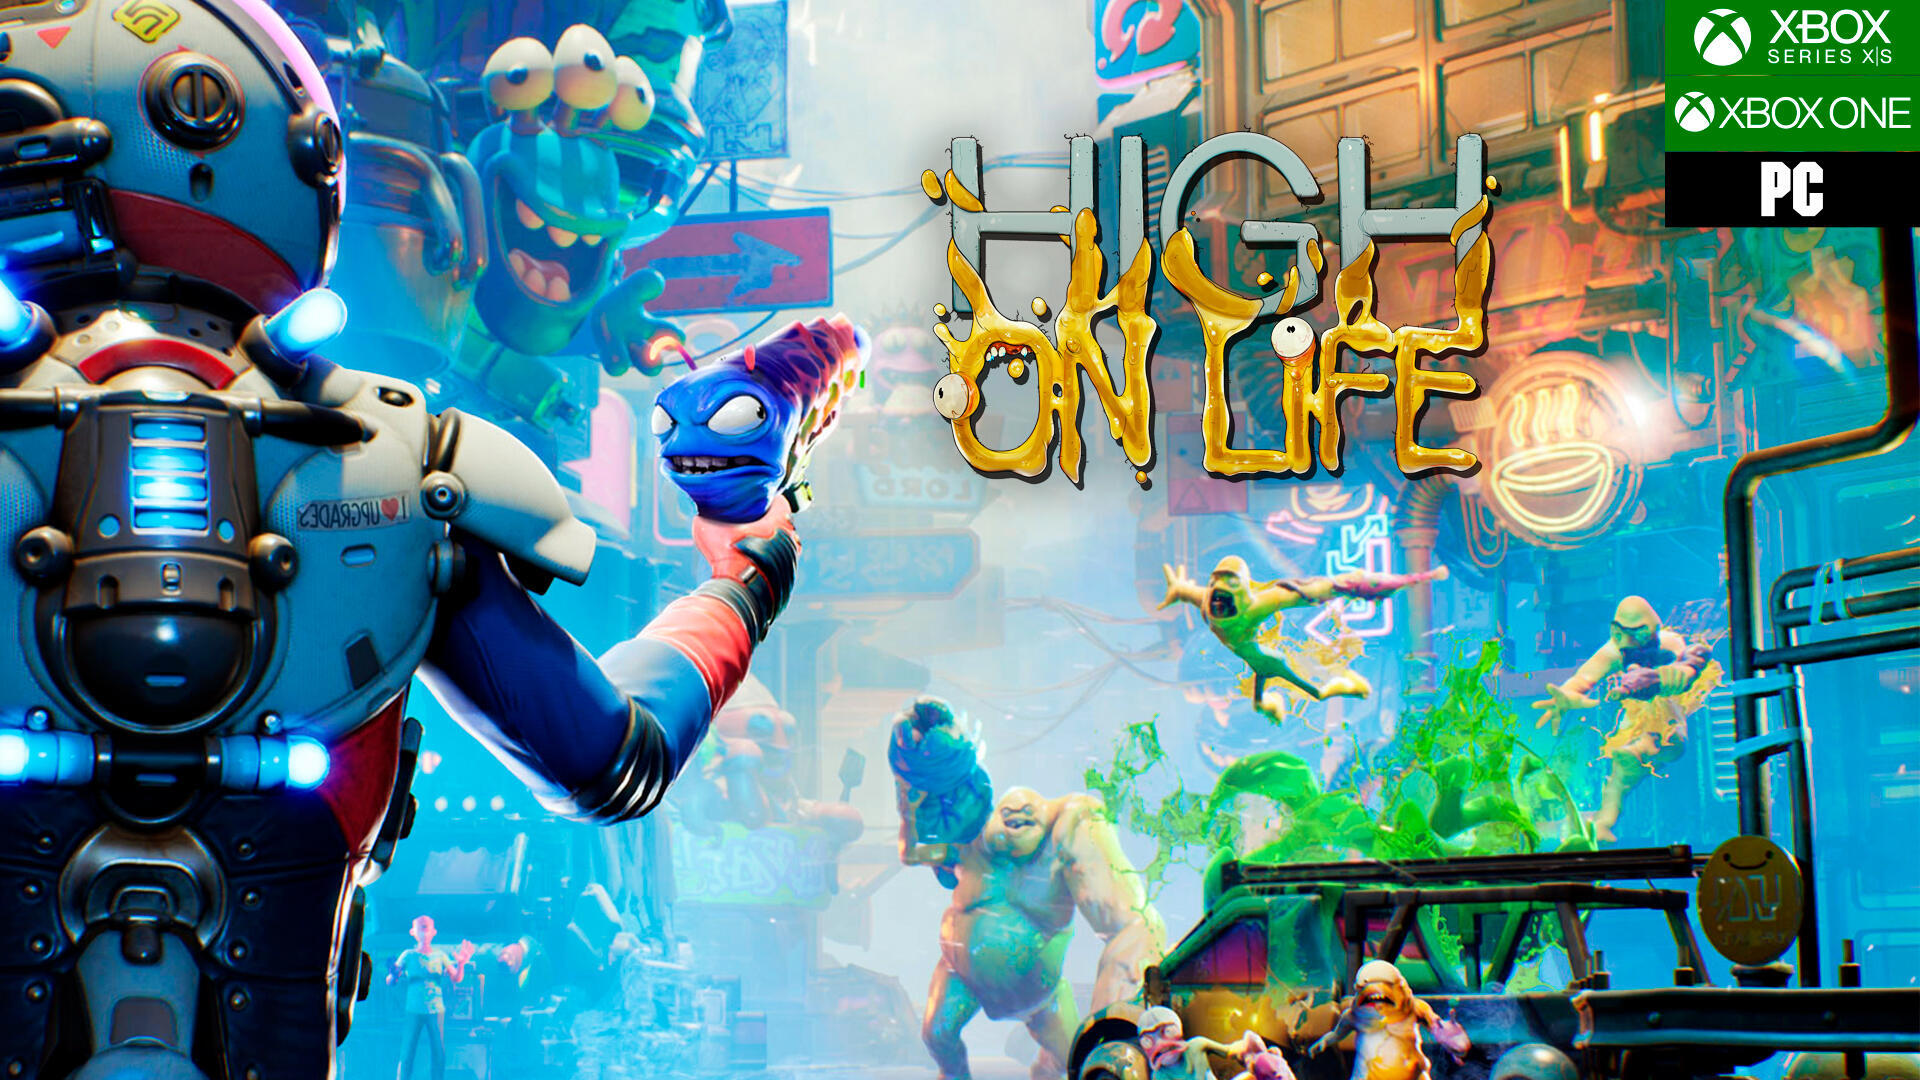 High on Life Análise - Gamereactor